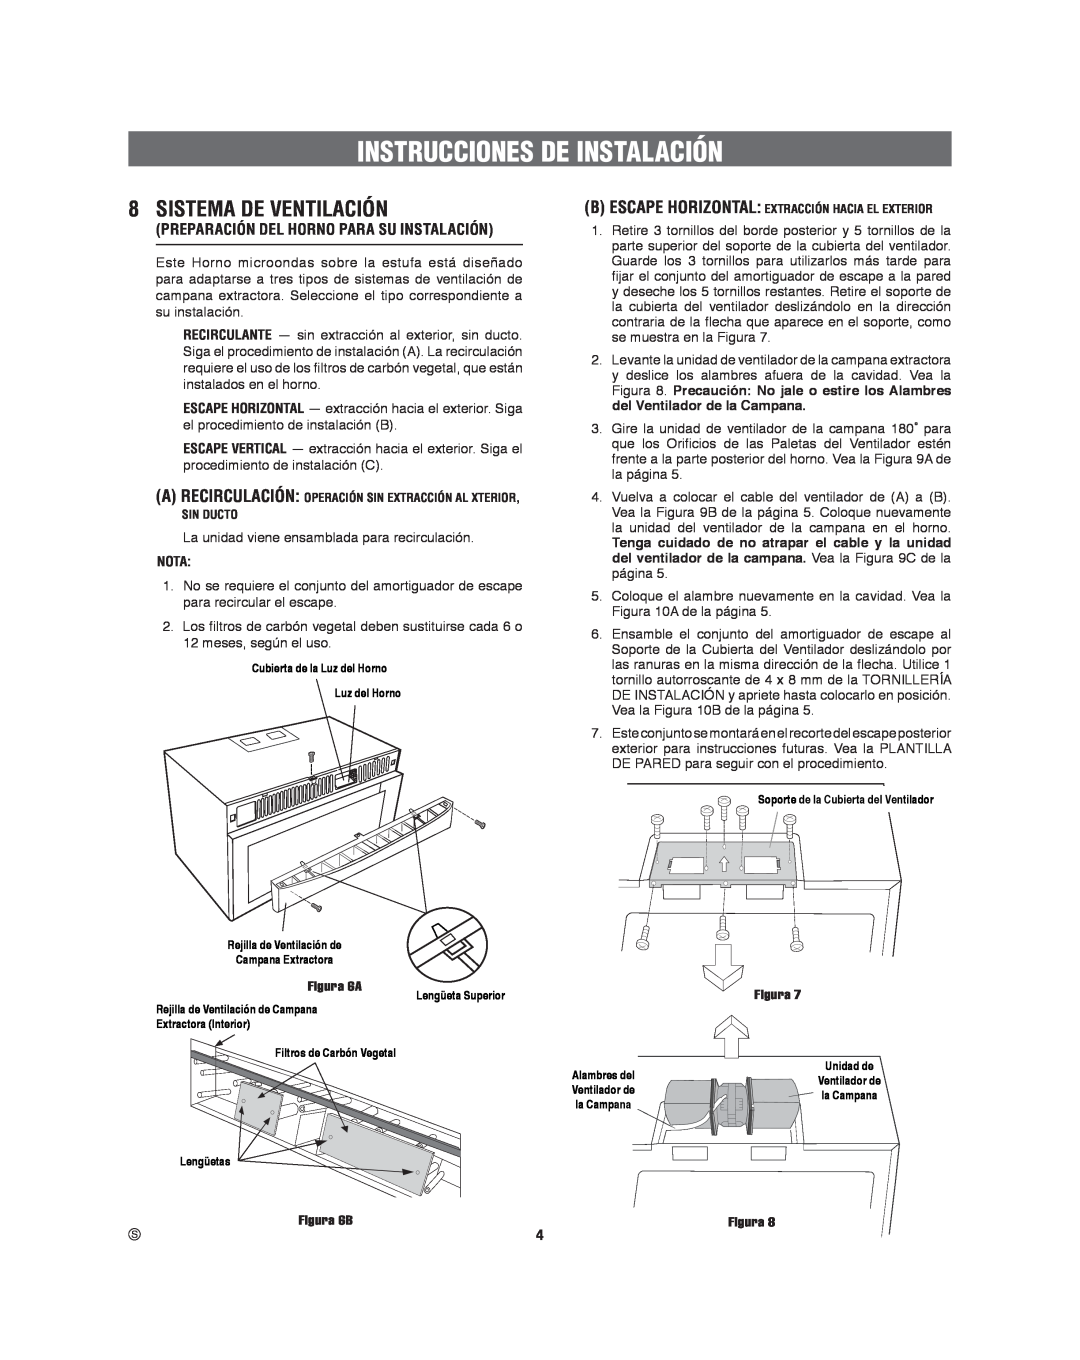 Frigidaire 316495060 Sistema De Ventilación, Preparación Del Horno Para Su Instalación, Nota, Instrucciones De Instalación 